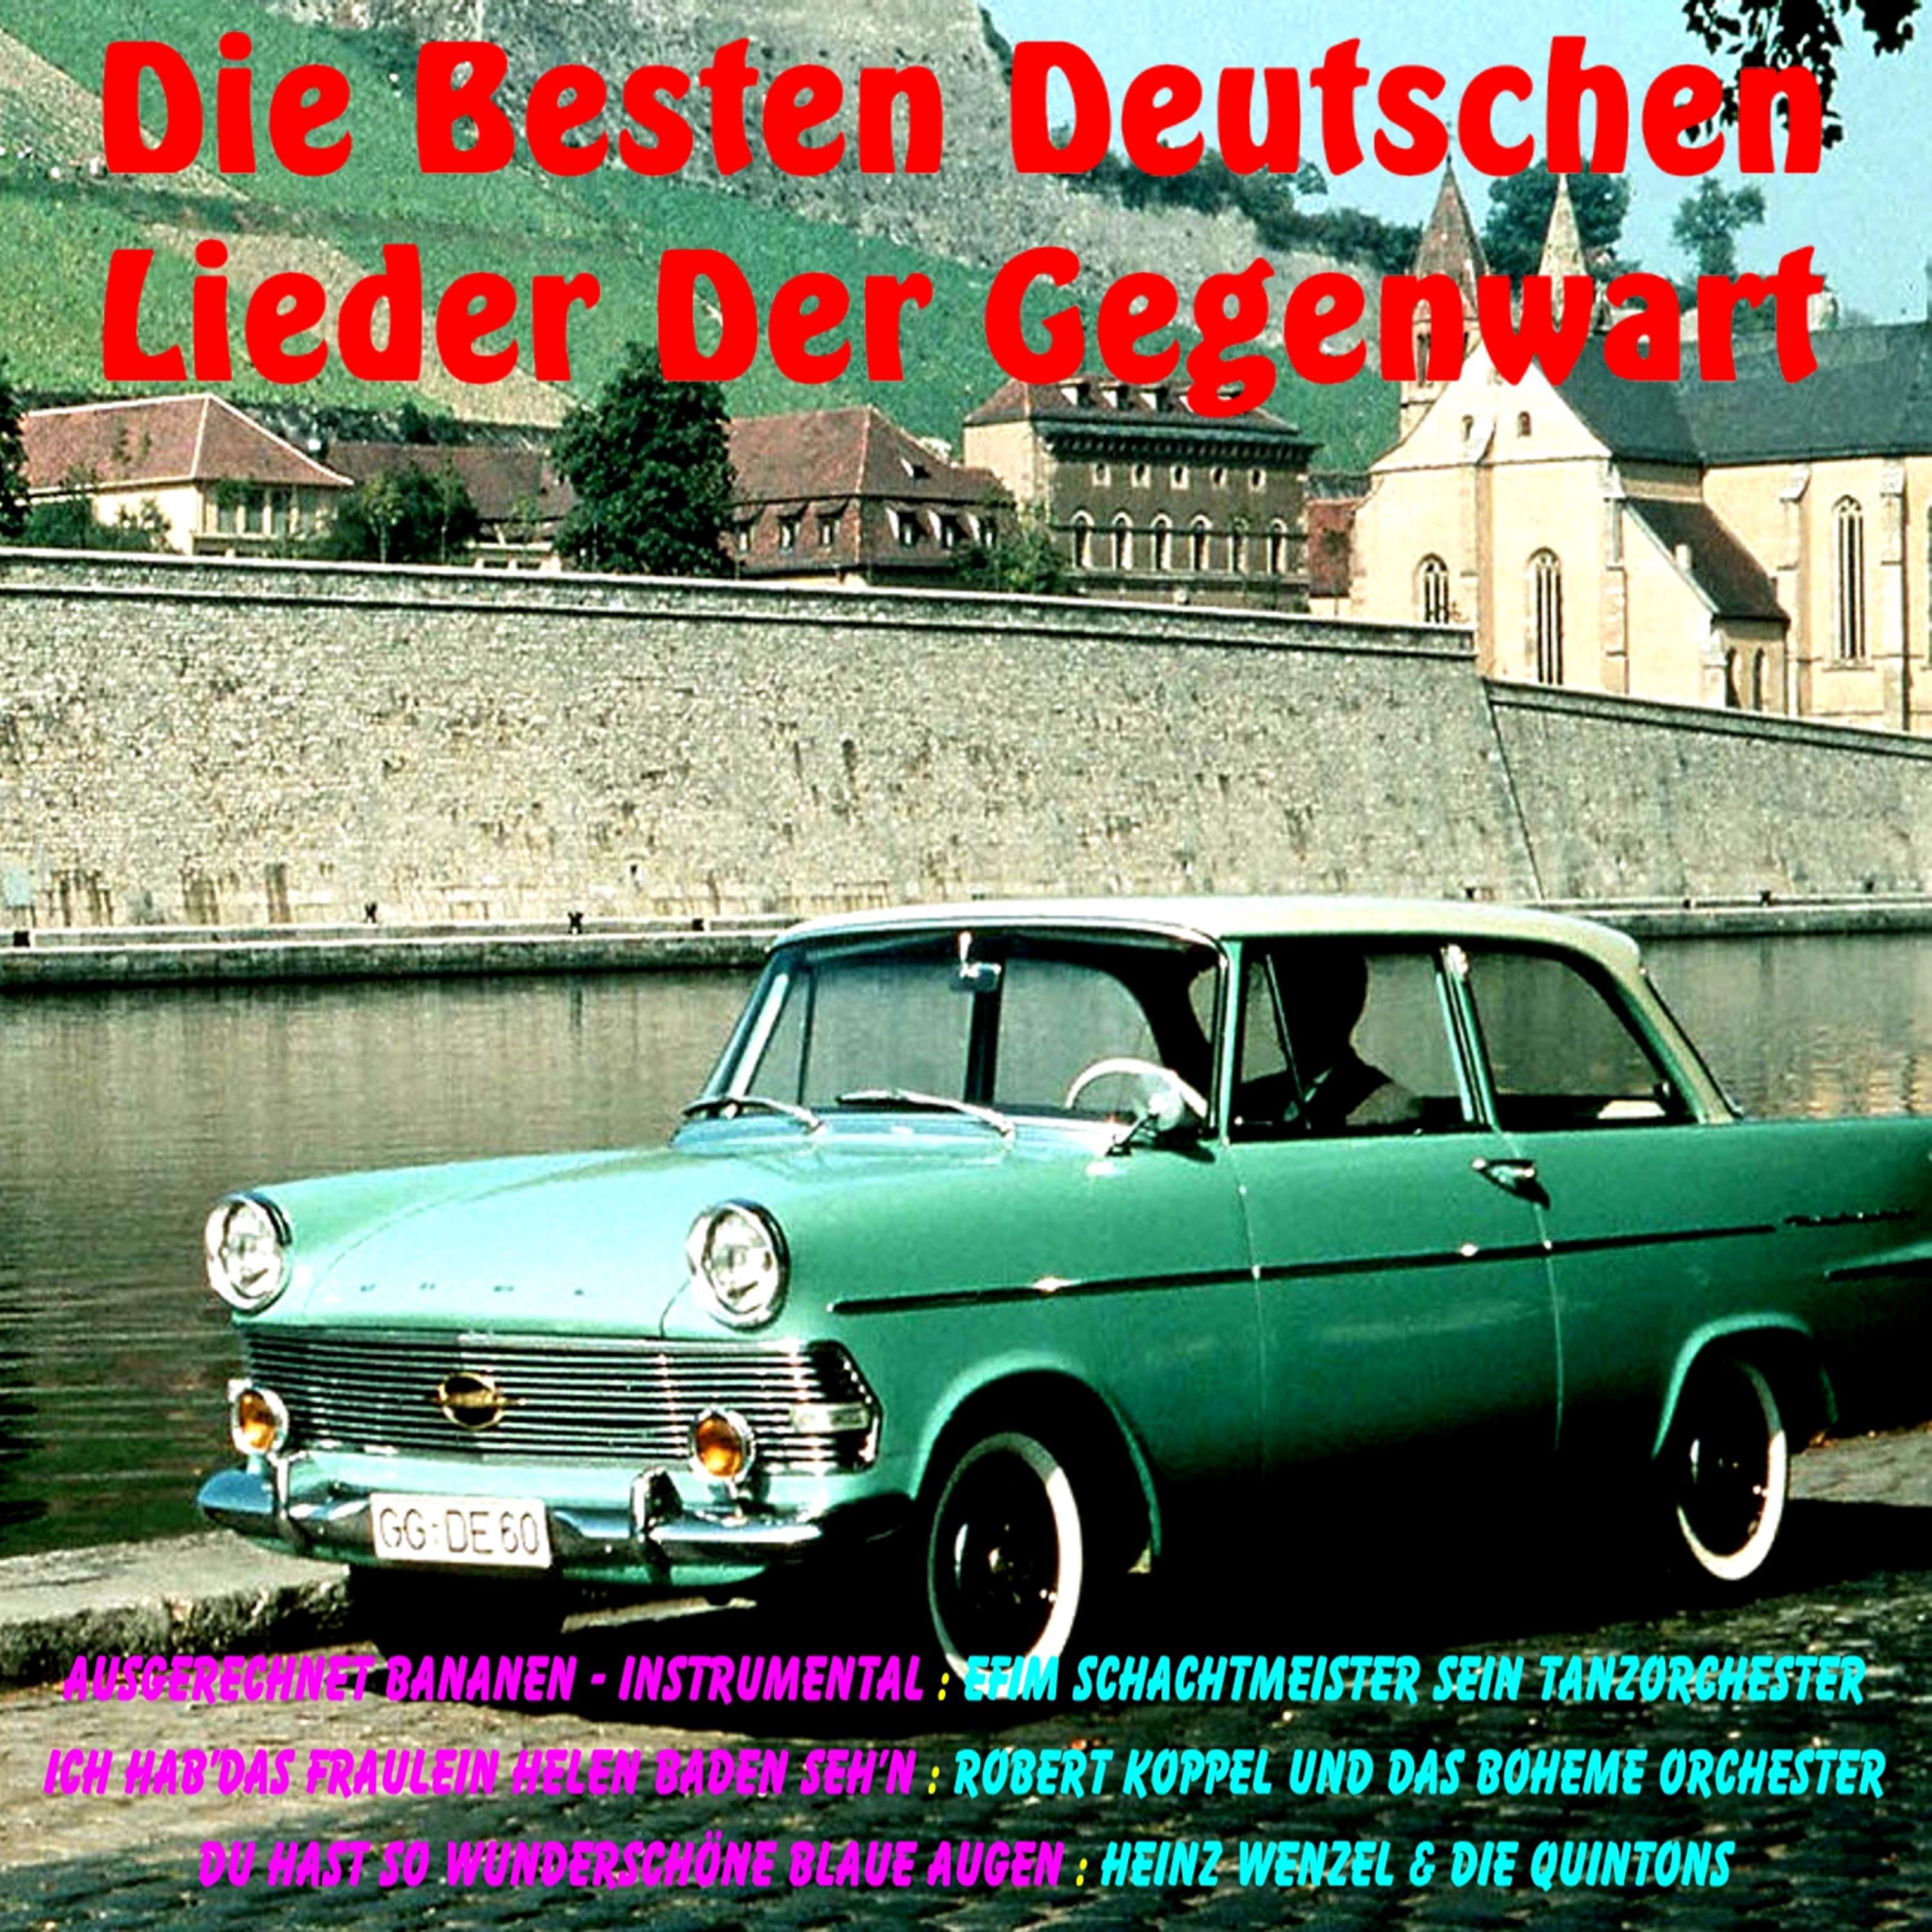 Die Besten Deutschen Lieder Der Gegenwart, Vol. 1